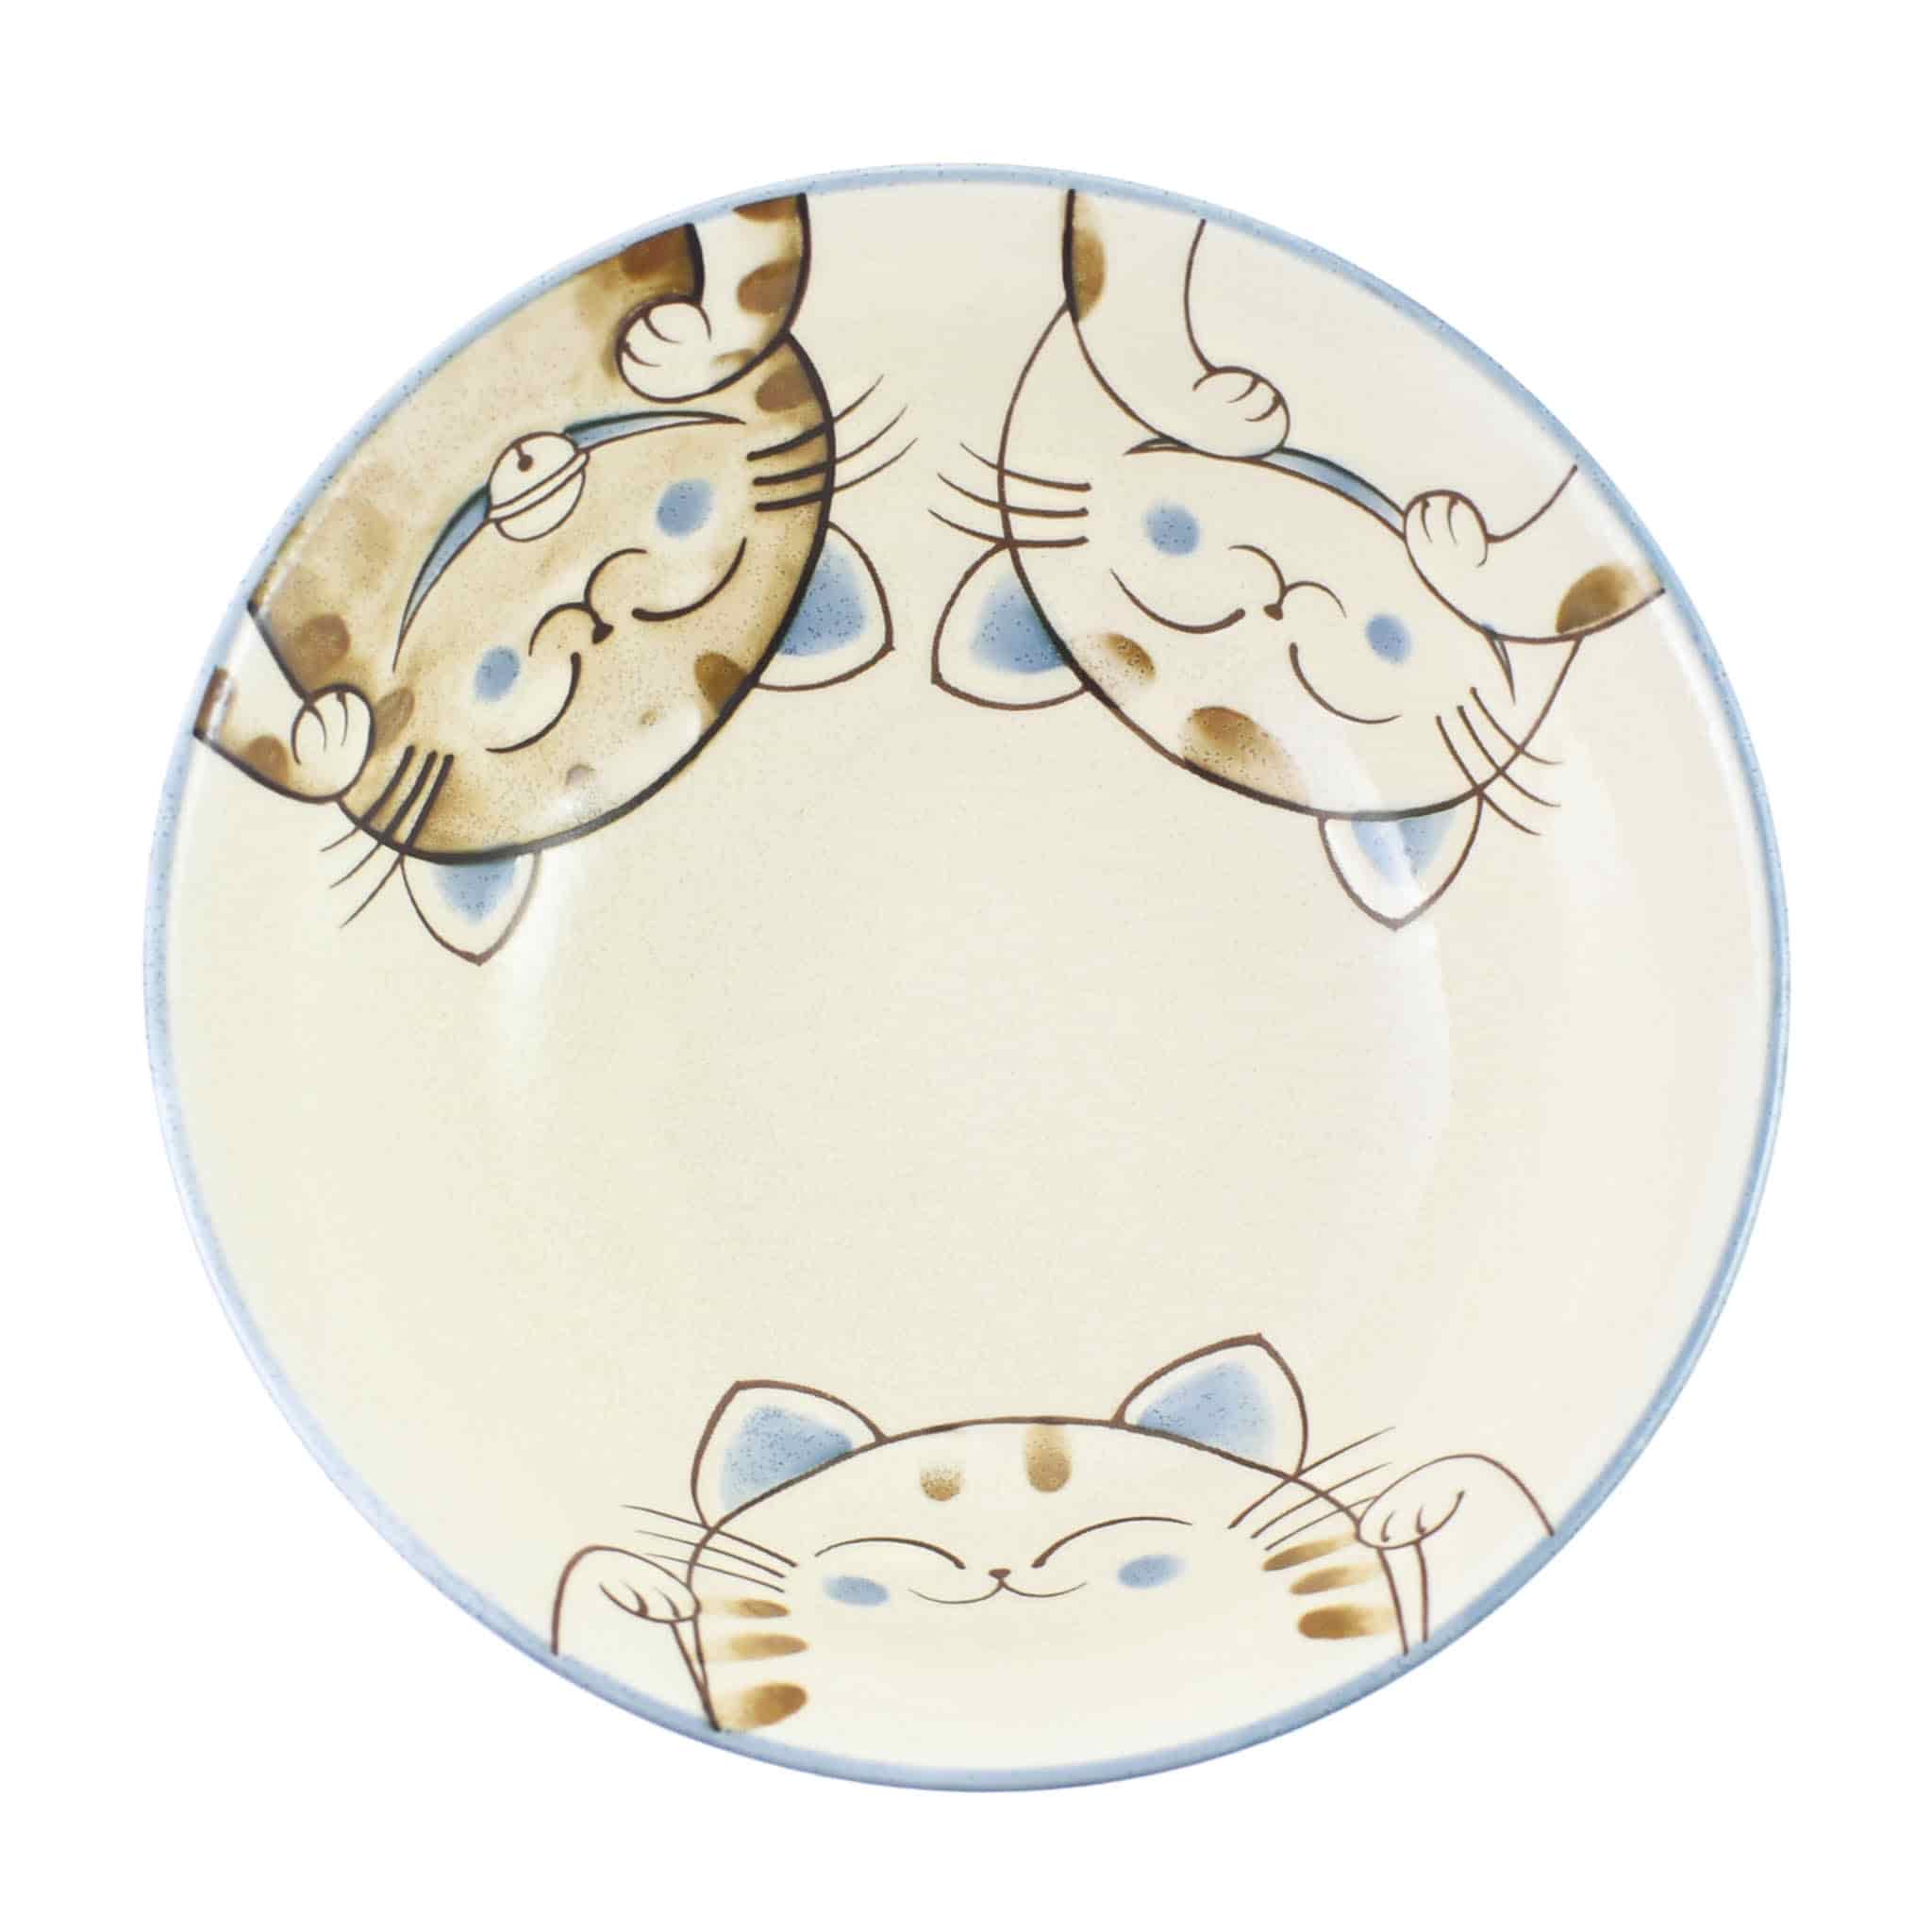 Blue Lucky Cat Japanese Ramen Bowl, 20.5cm